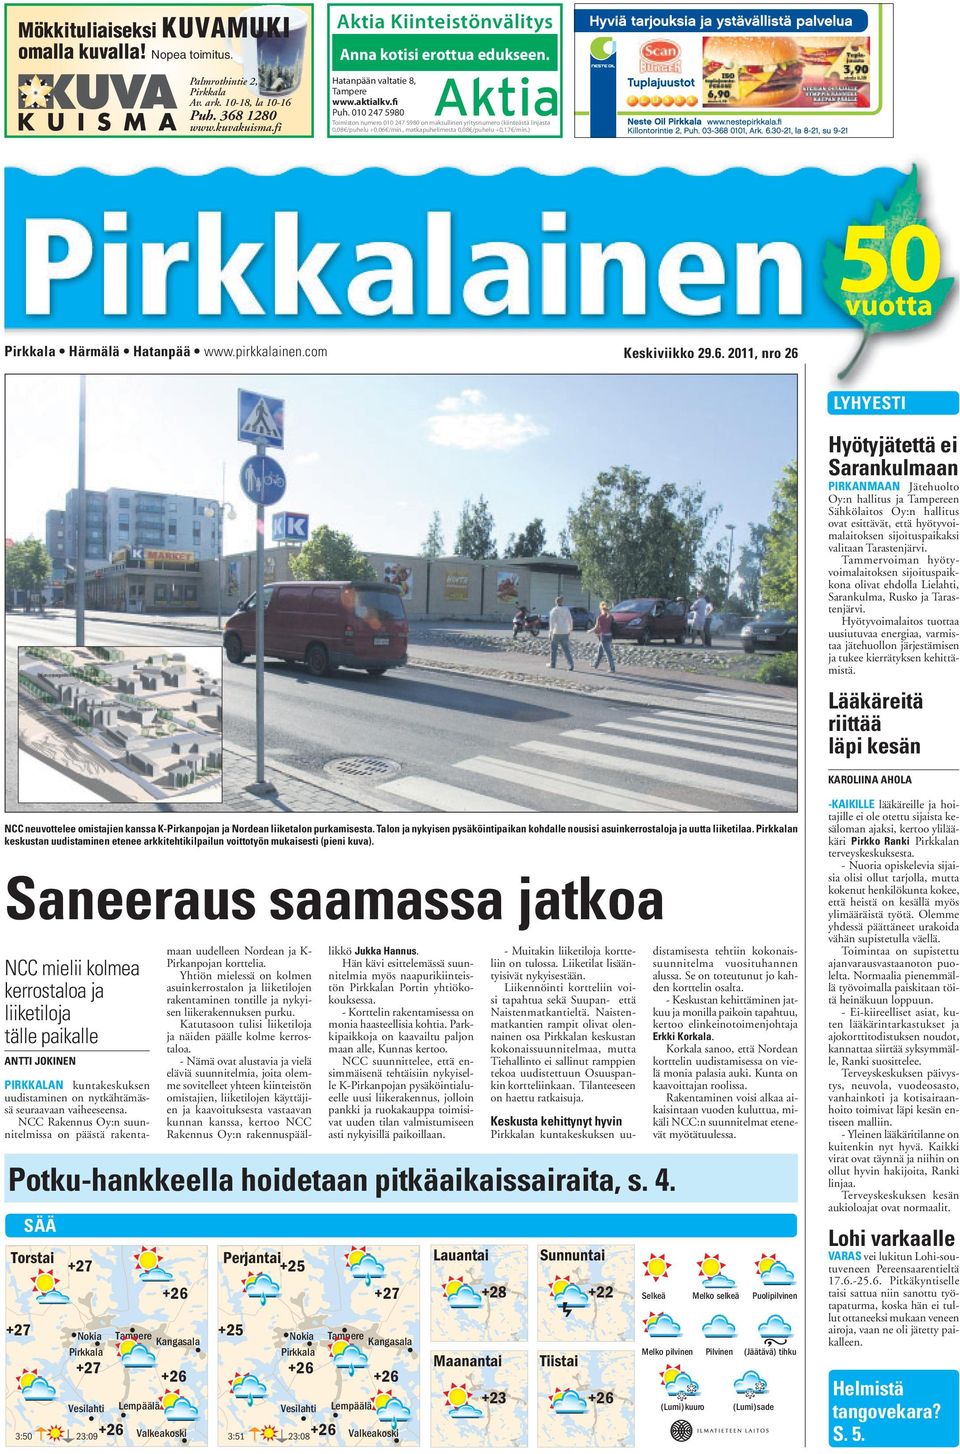 , matkapuhelimesta 0,08 /puhelu +0,17 /min.) Pirkkala Härmälä Hatanpää Keskiviikko 29.6.